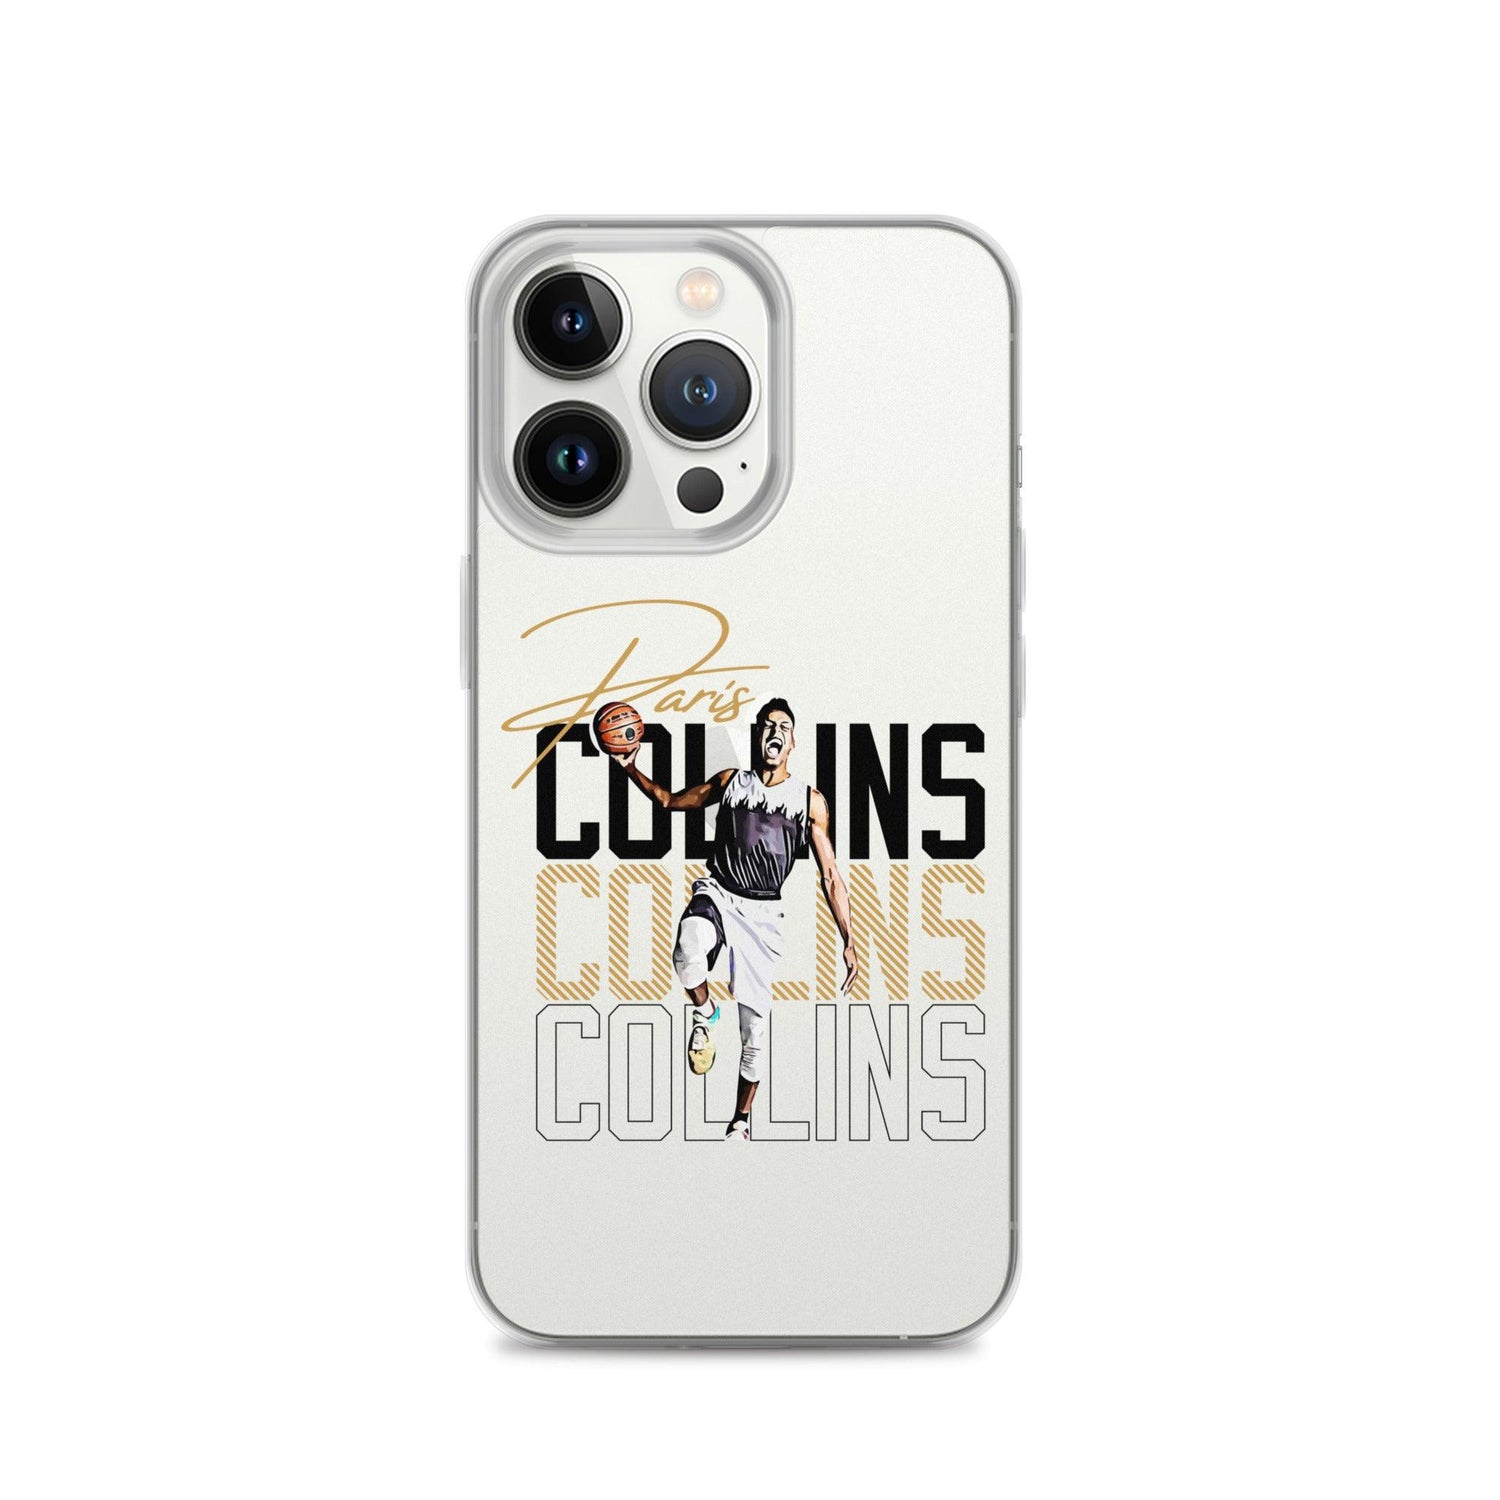 Paris Collins “Essential” iPhone Case - Fan Arch